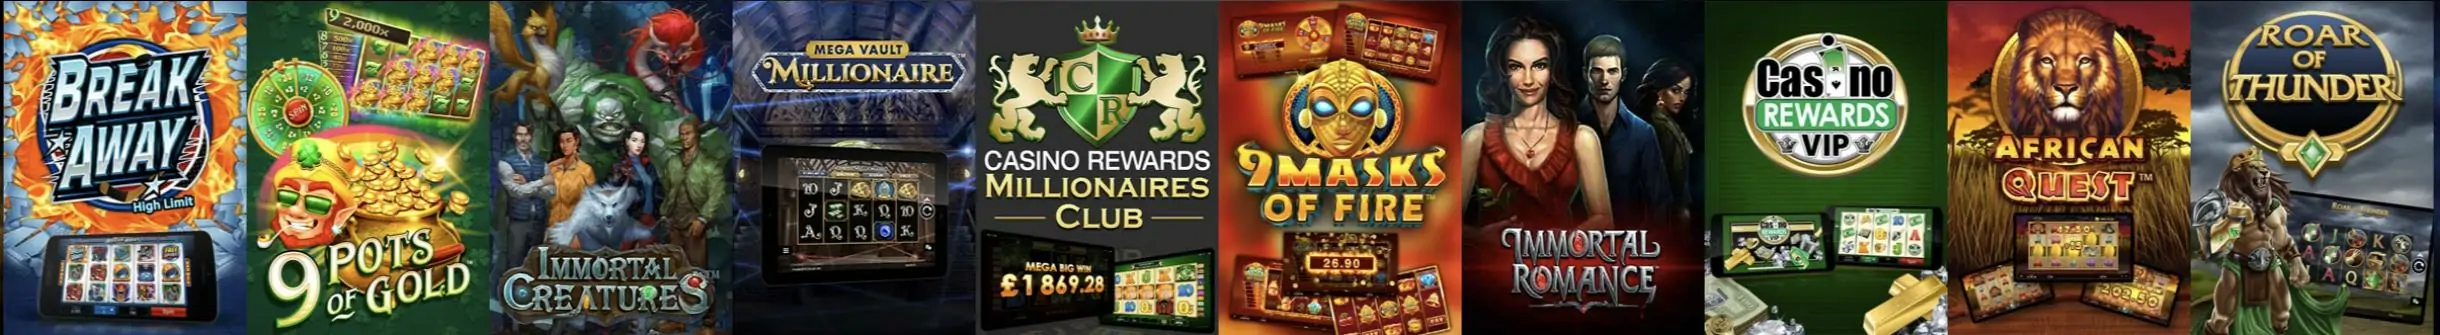 Popular Game Titles at Casino Rewards